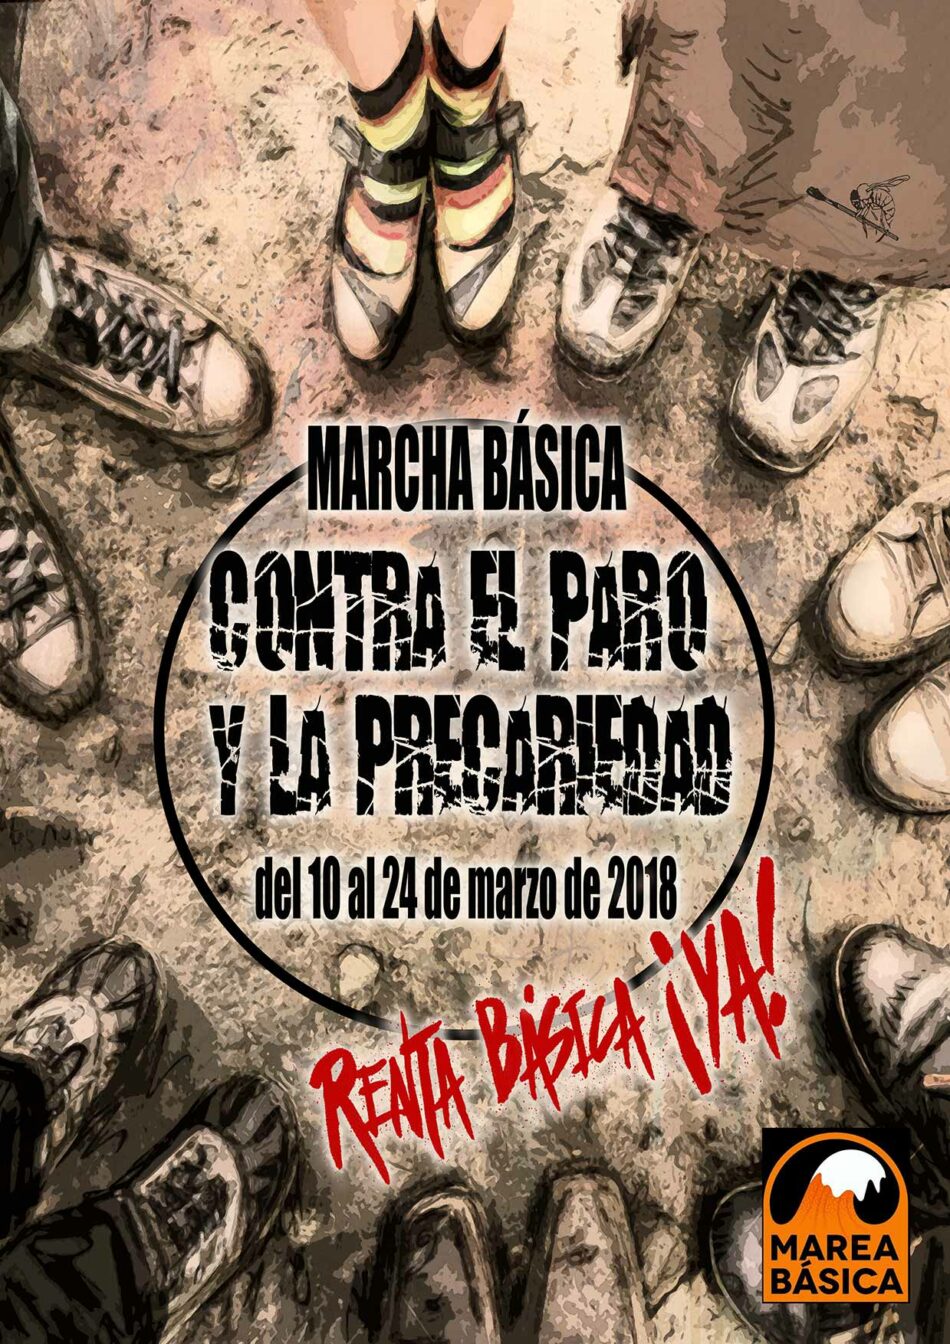 La Marcha Básica contra el paro y la precariedad llega mañana, 24 de marzo, a Madrid